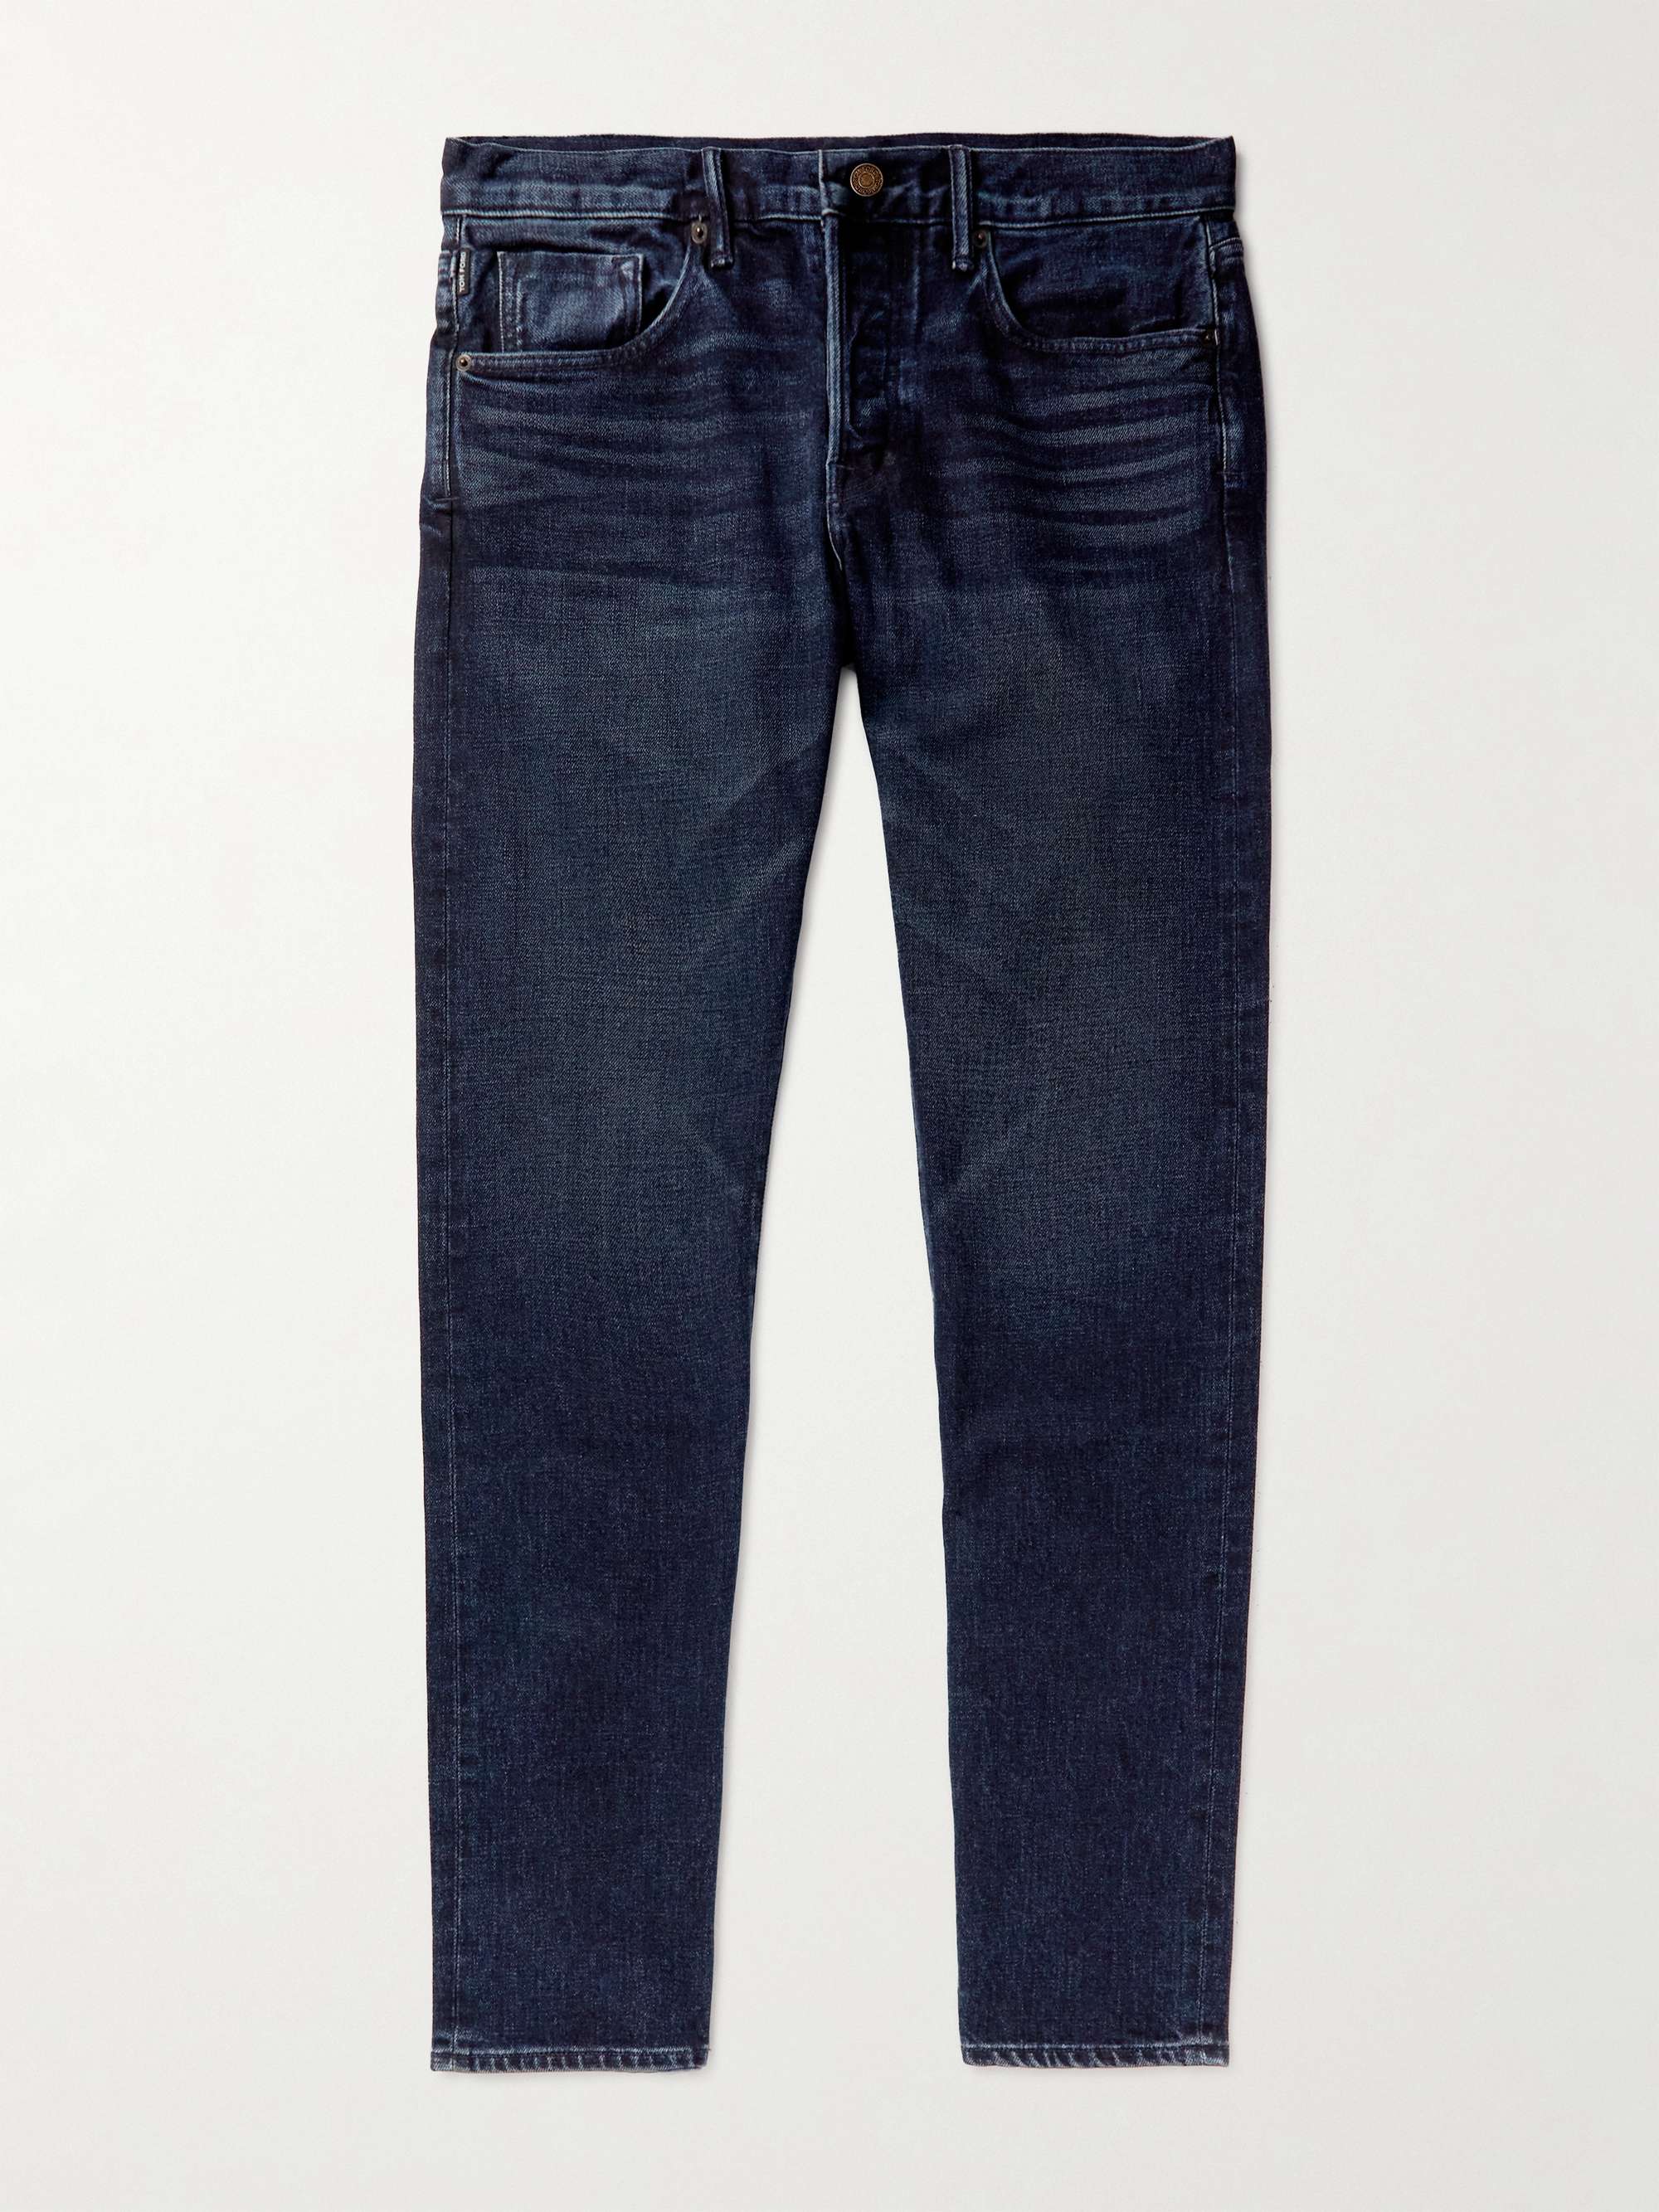 TOM FORD Straight-Leg Garment-Dyed Selvedge Jeans